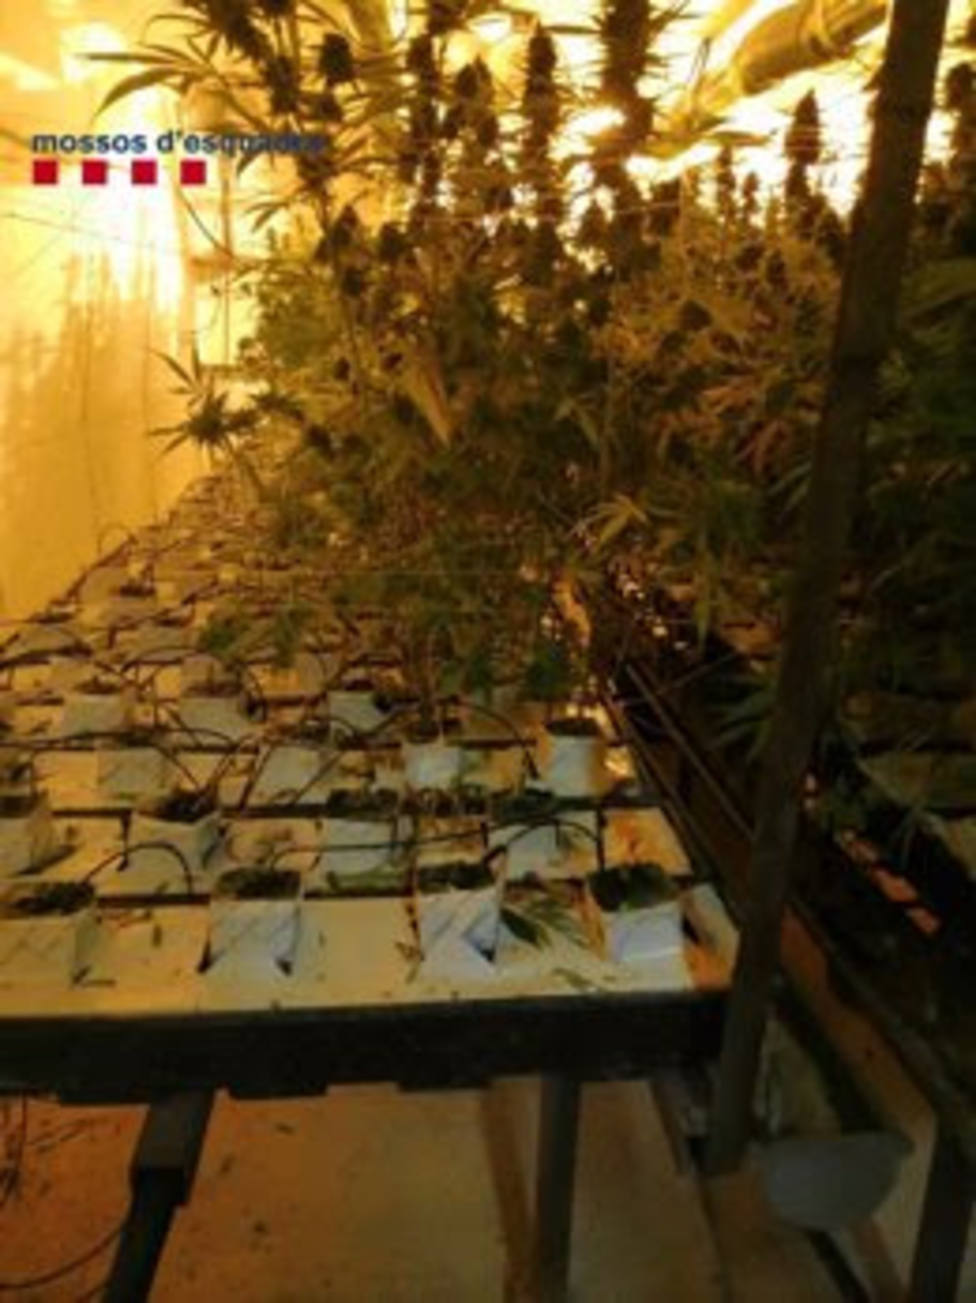 Plantación de marihuana subterránea descubierta por los Mossos